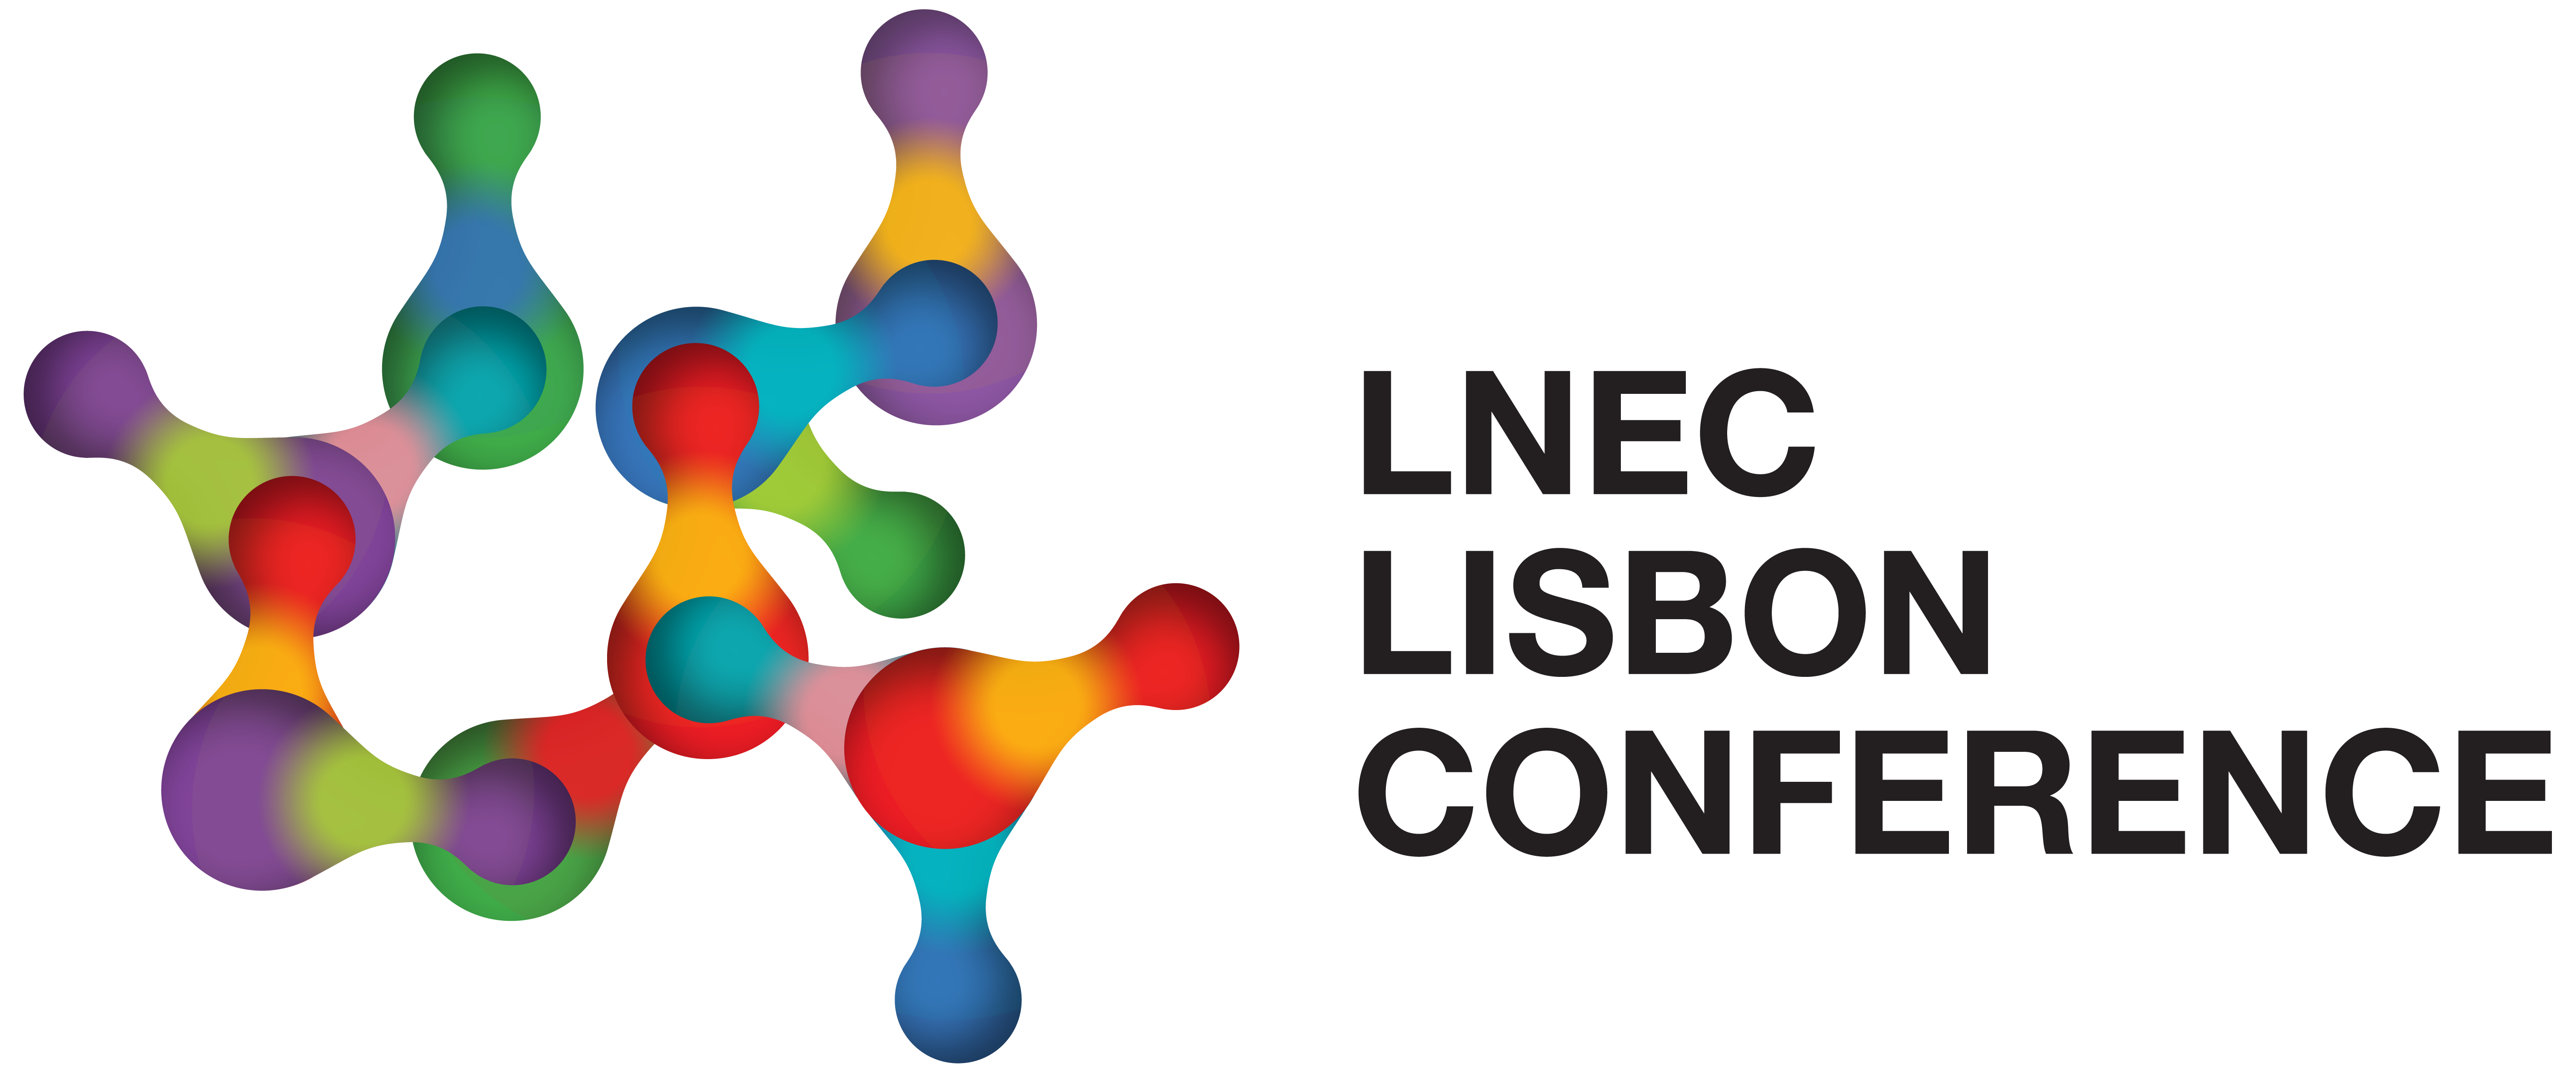 logo lnec lisbon conference v2